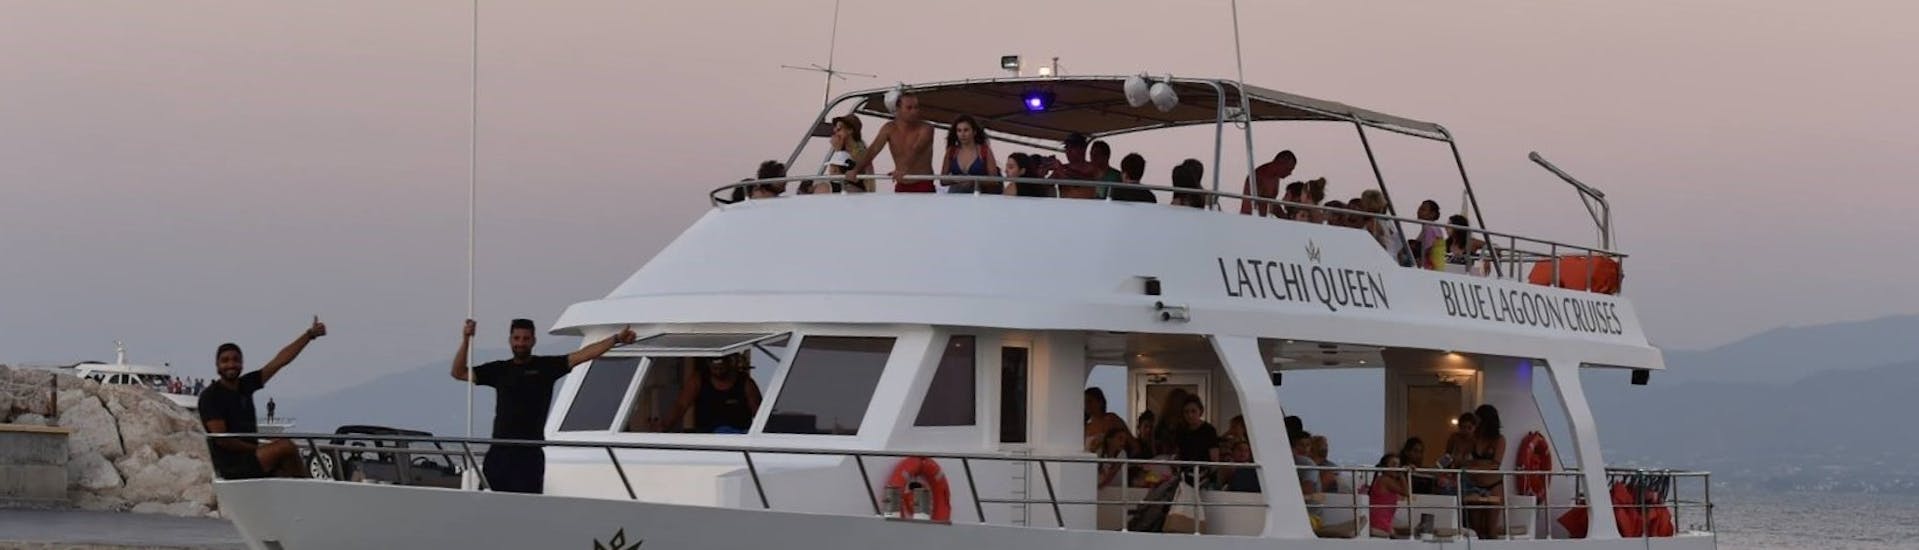 giro in barca da Latchi alla Laguna Blu con sosta per nuotare con Latchi Queen Cyprus.